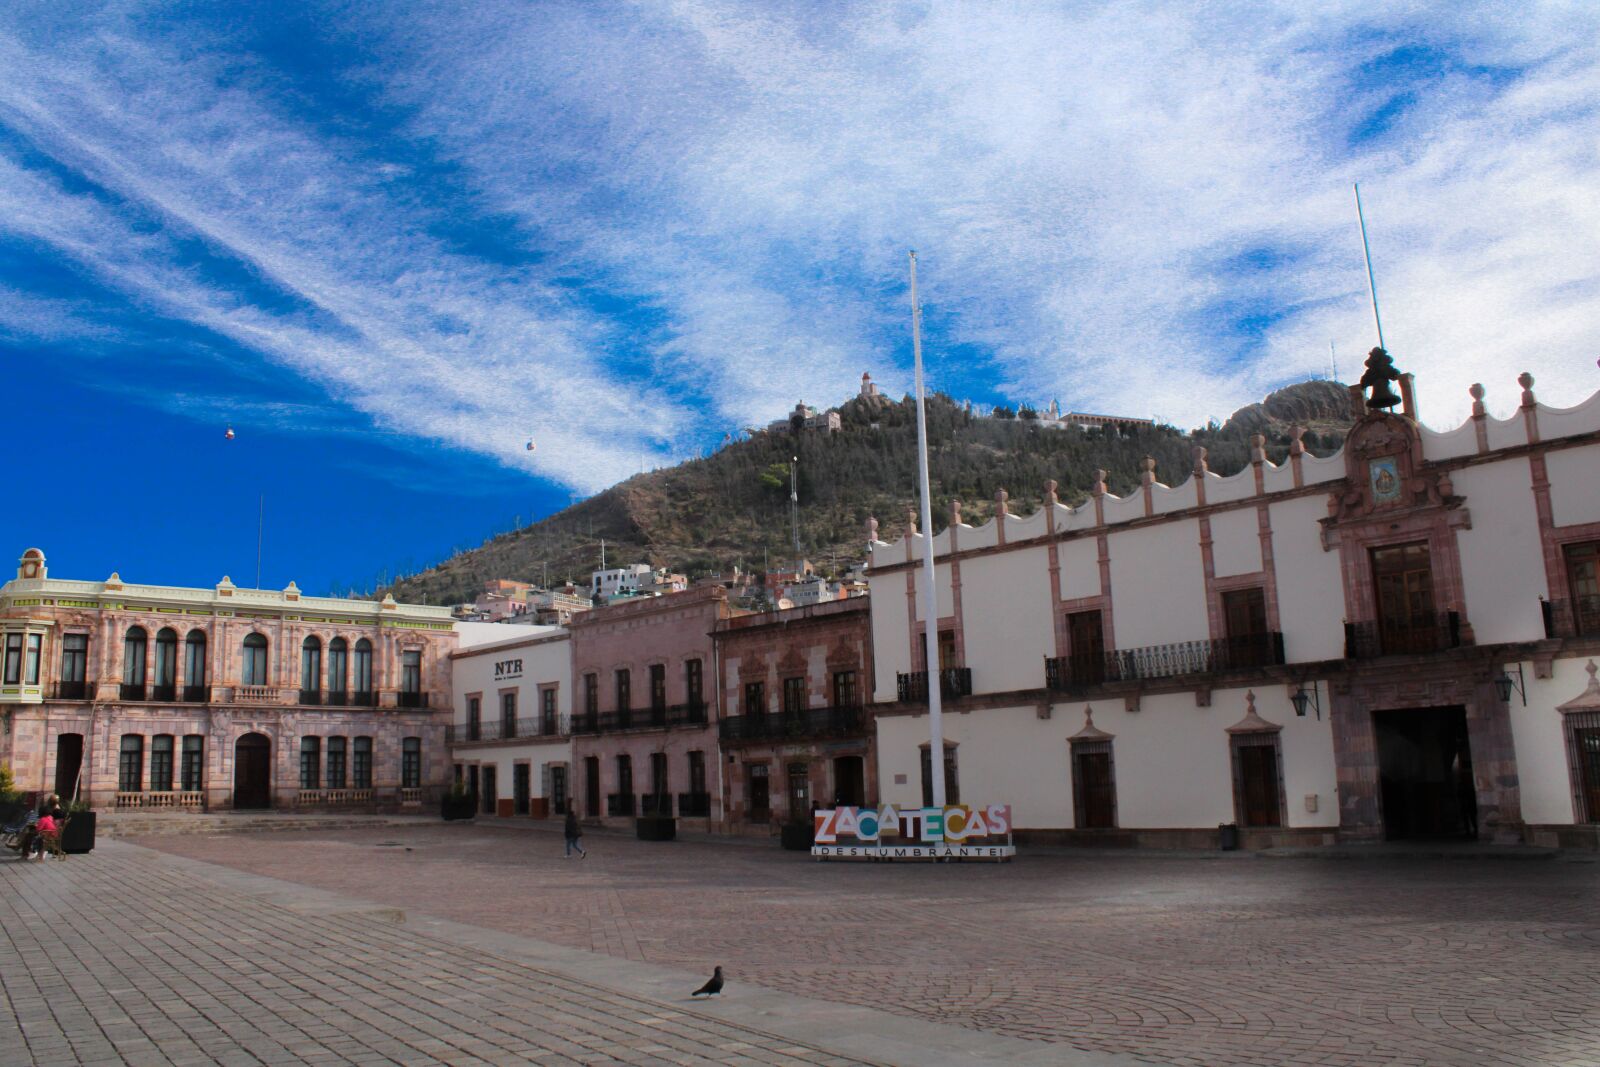 Canon EOS 2000D (EOS Rebel T7 / EOS Kiss X90 / EOS 1500D) sample photo. Zacatecas, mexico, church photography